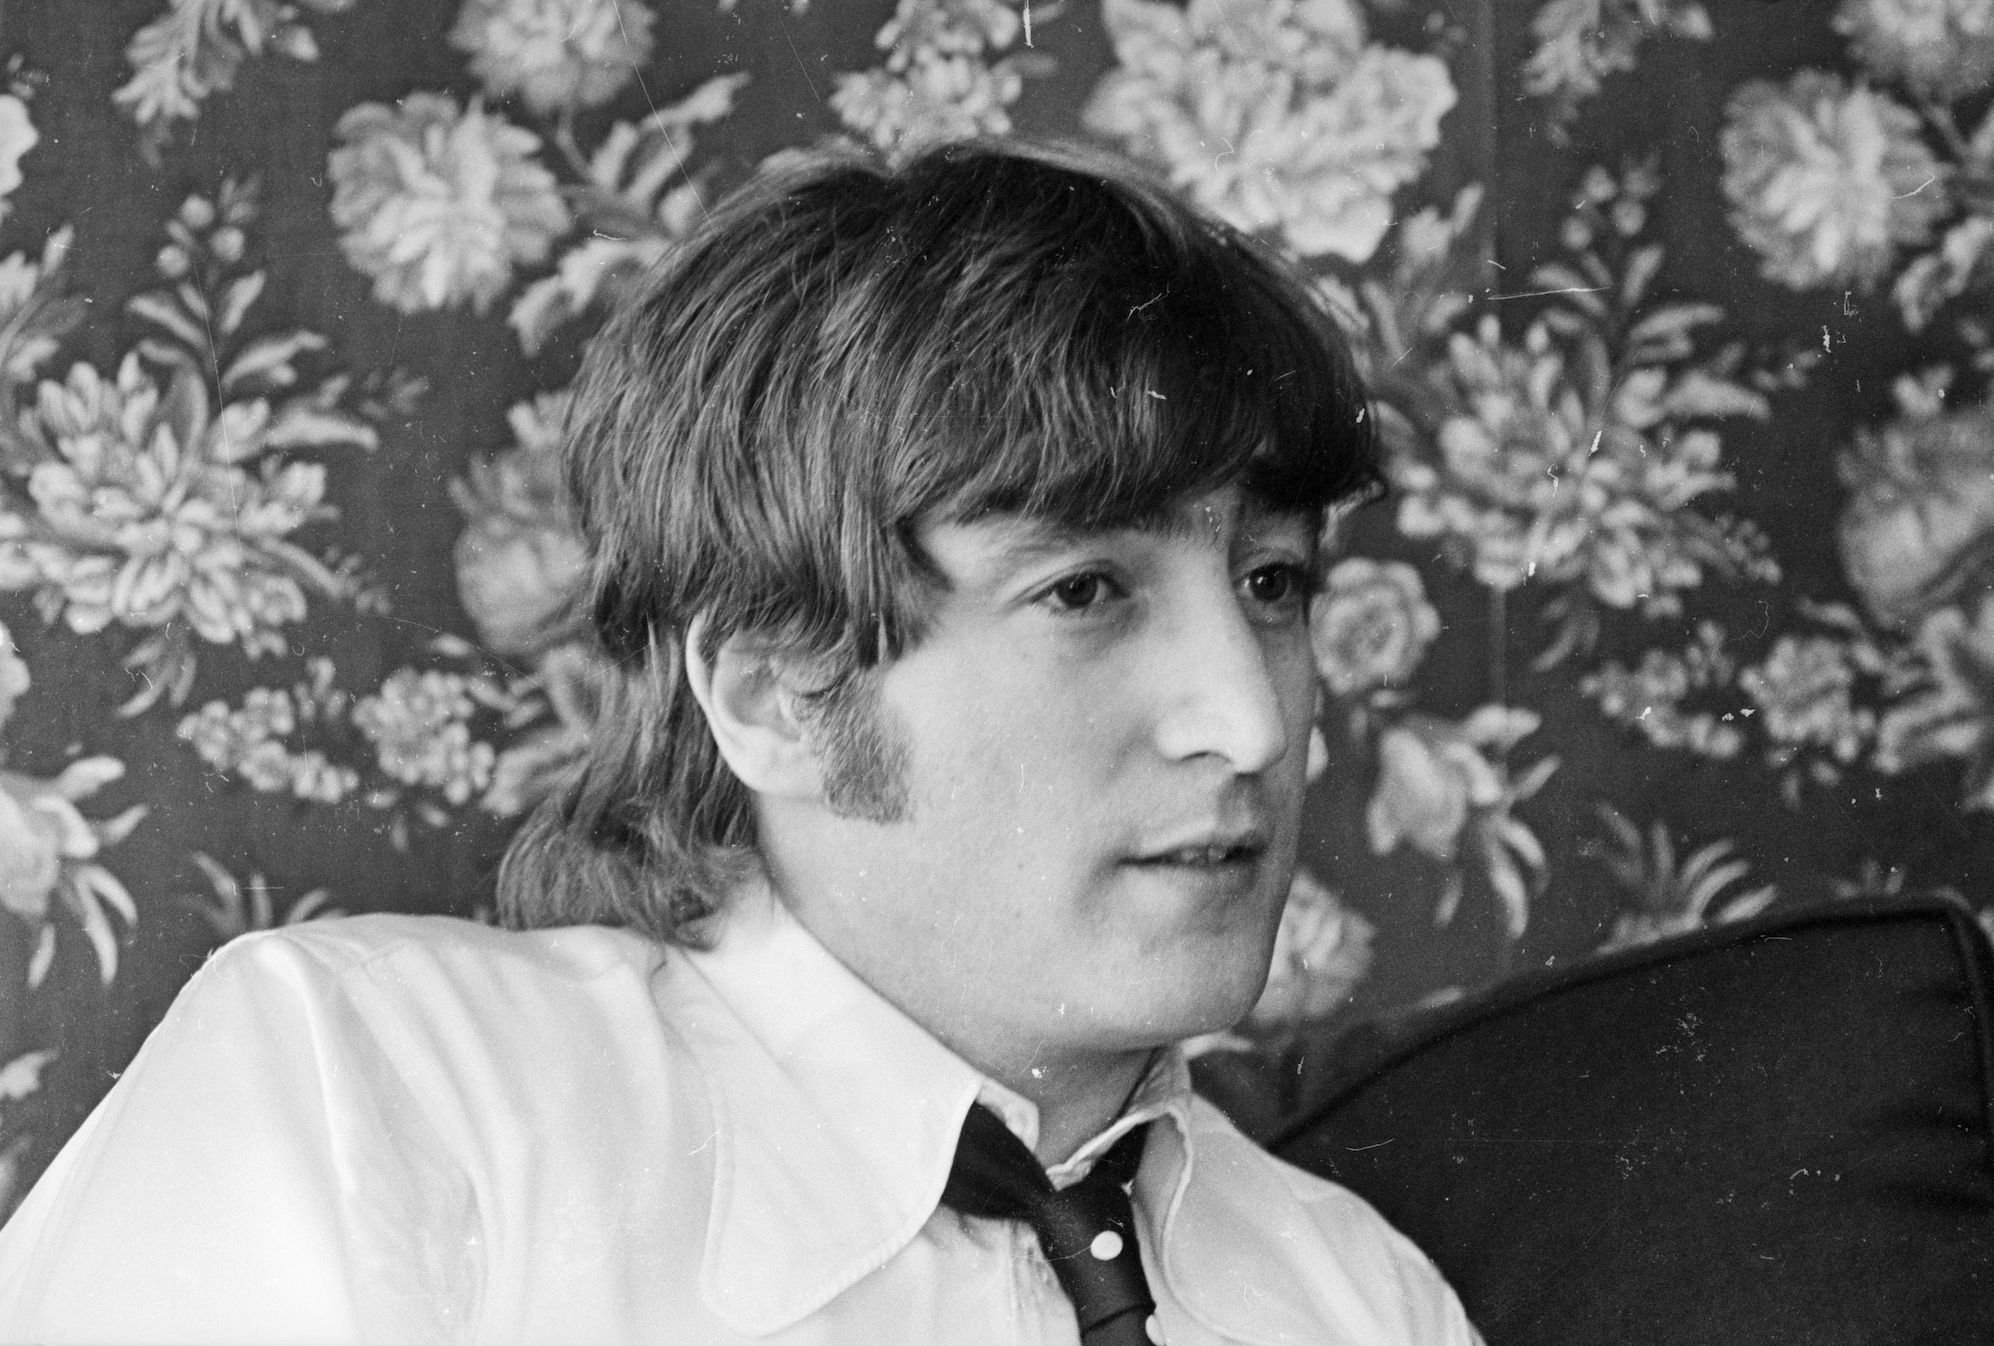 John Lennon of The Beatles in the U.S.